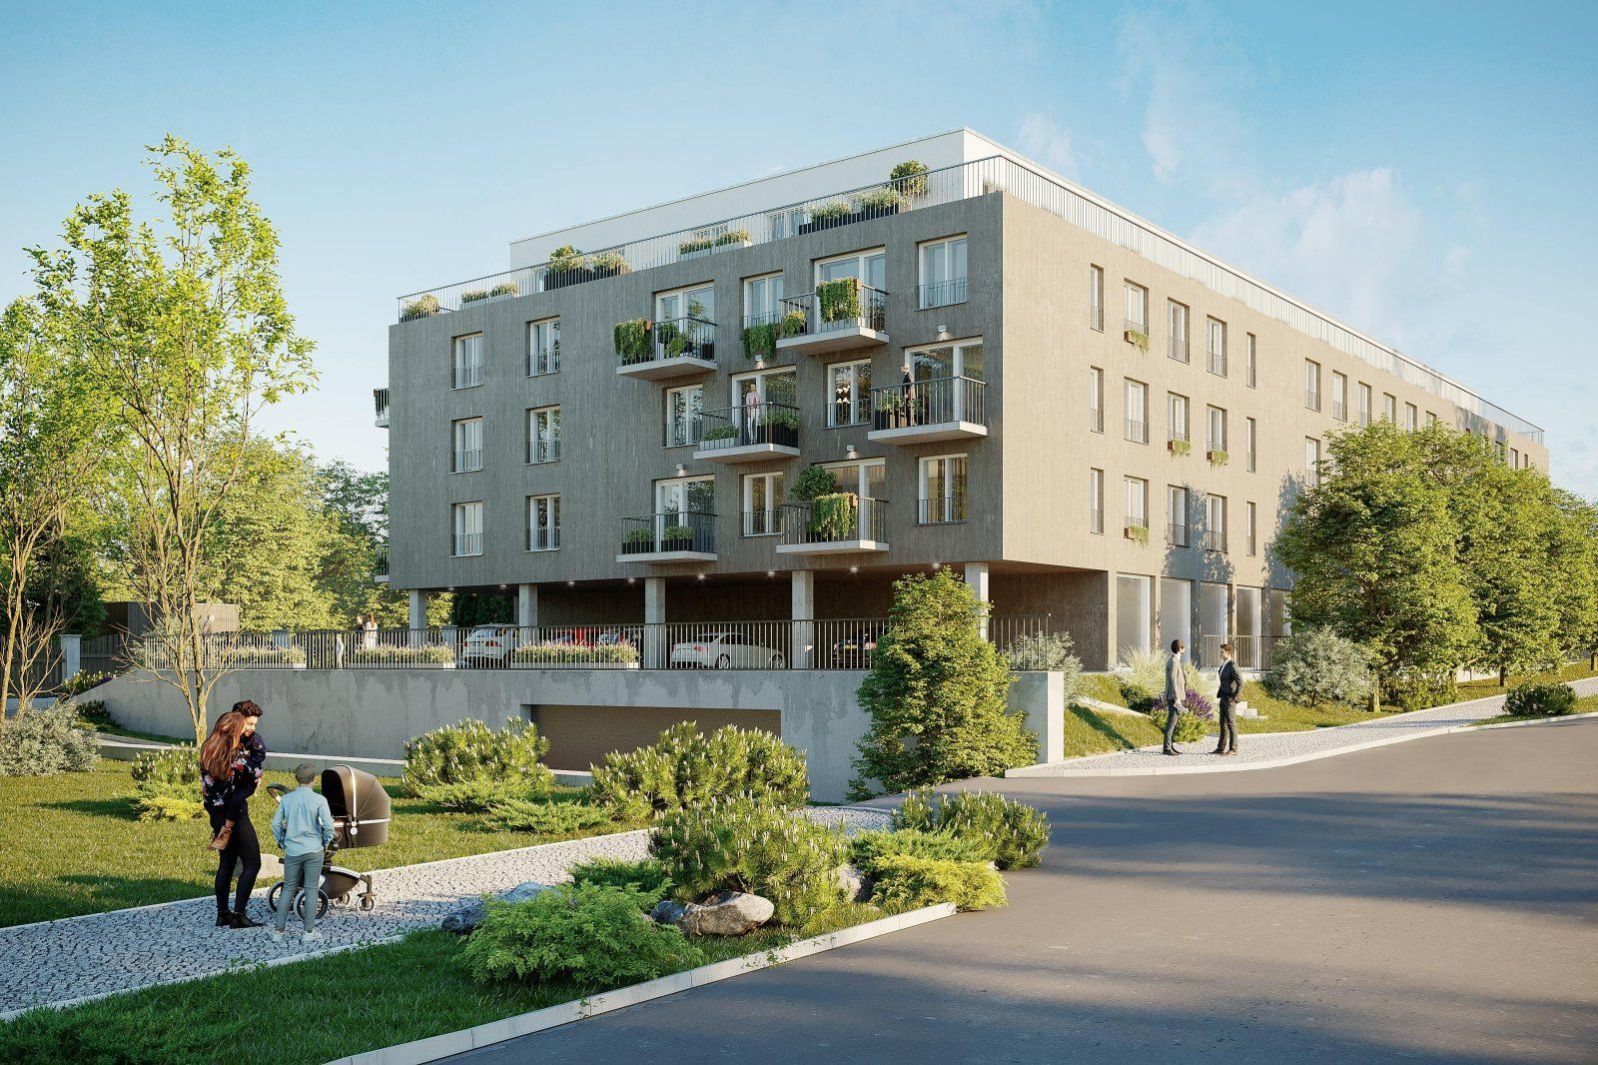 Moderní a úsporný byt 2+kk s balkonem v blízkosti přírody na Praze 9 v projektu Zelené kaskády.